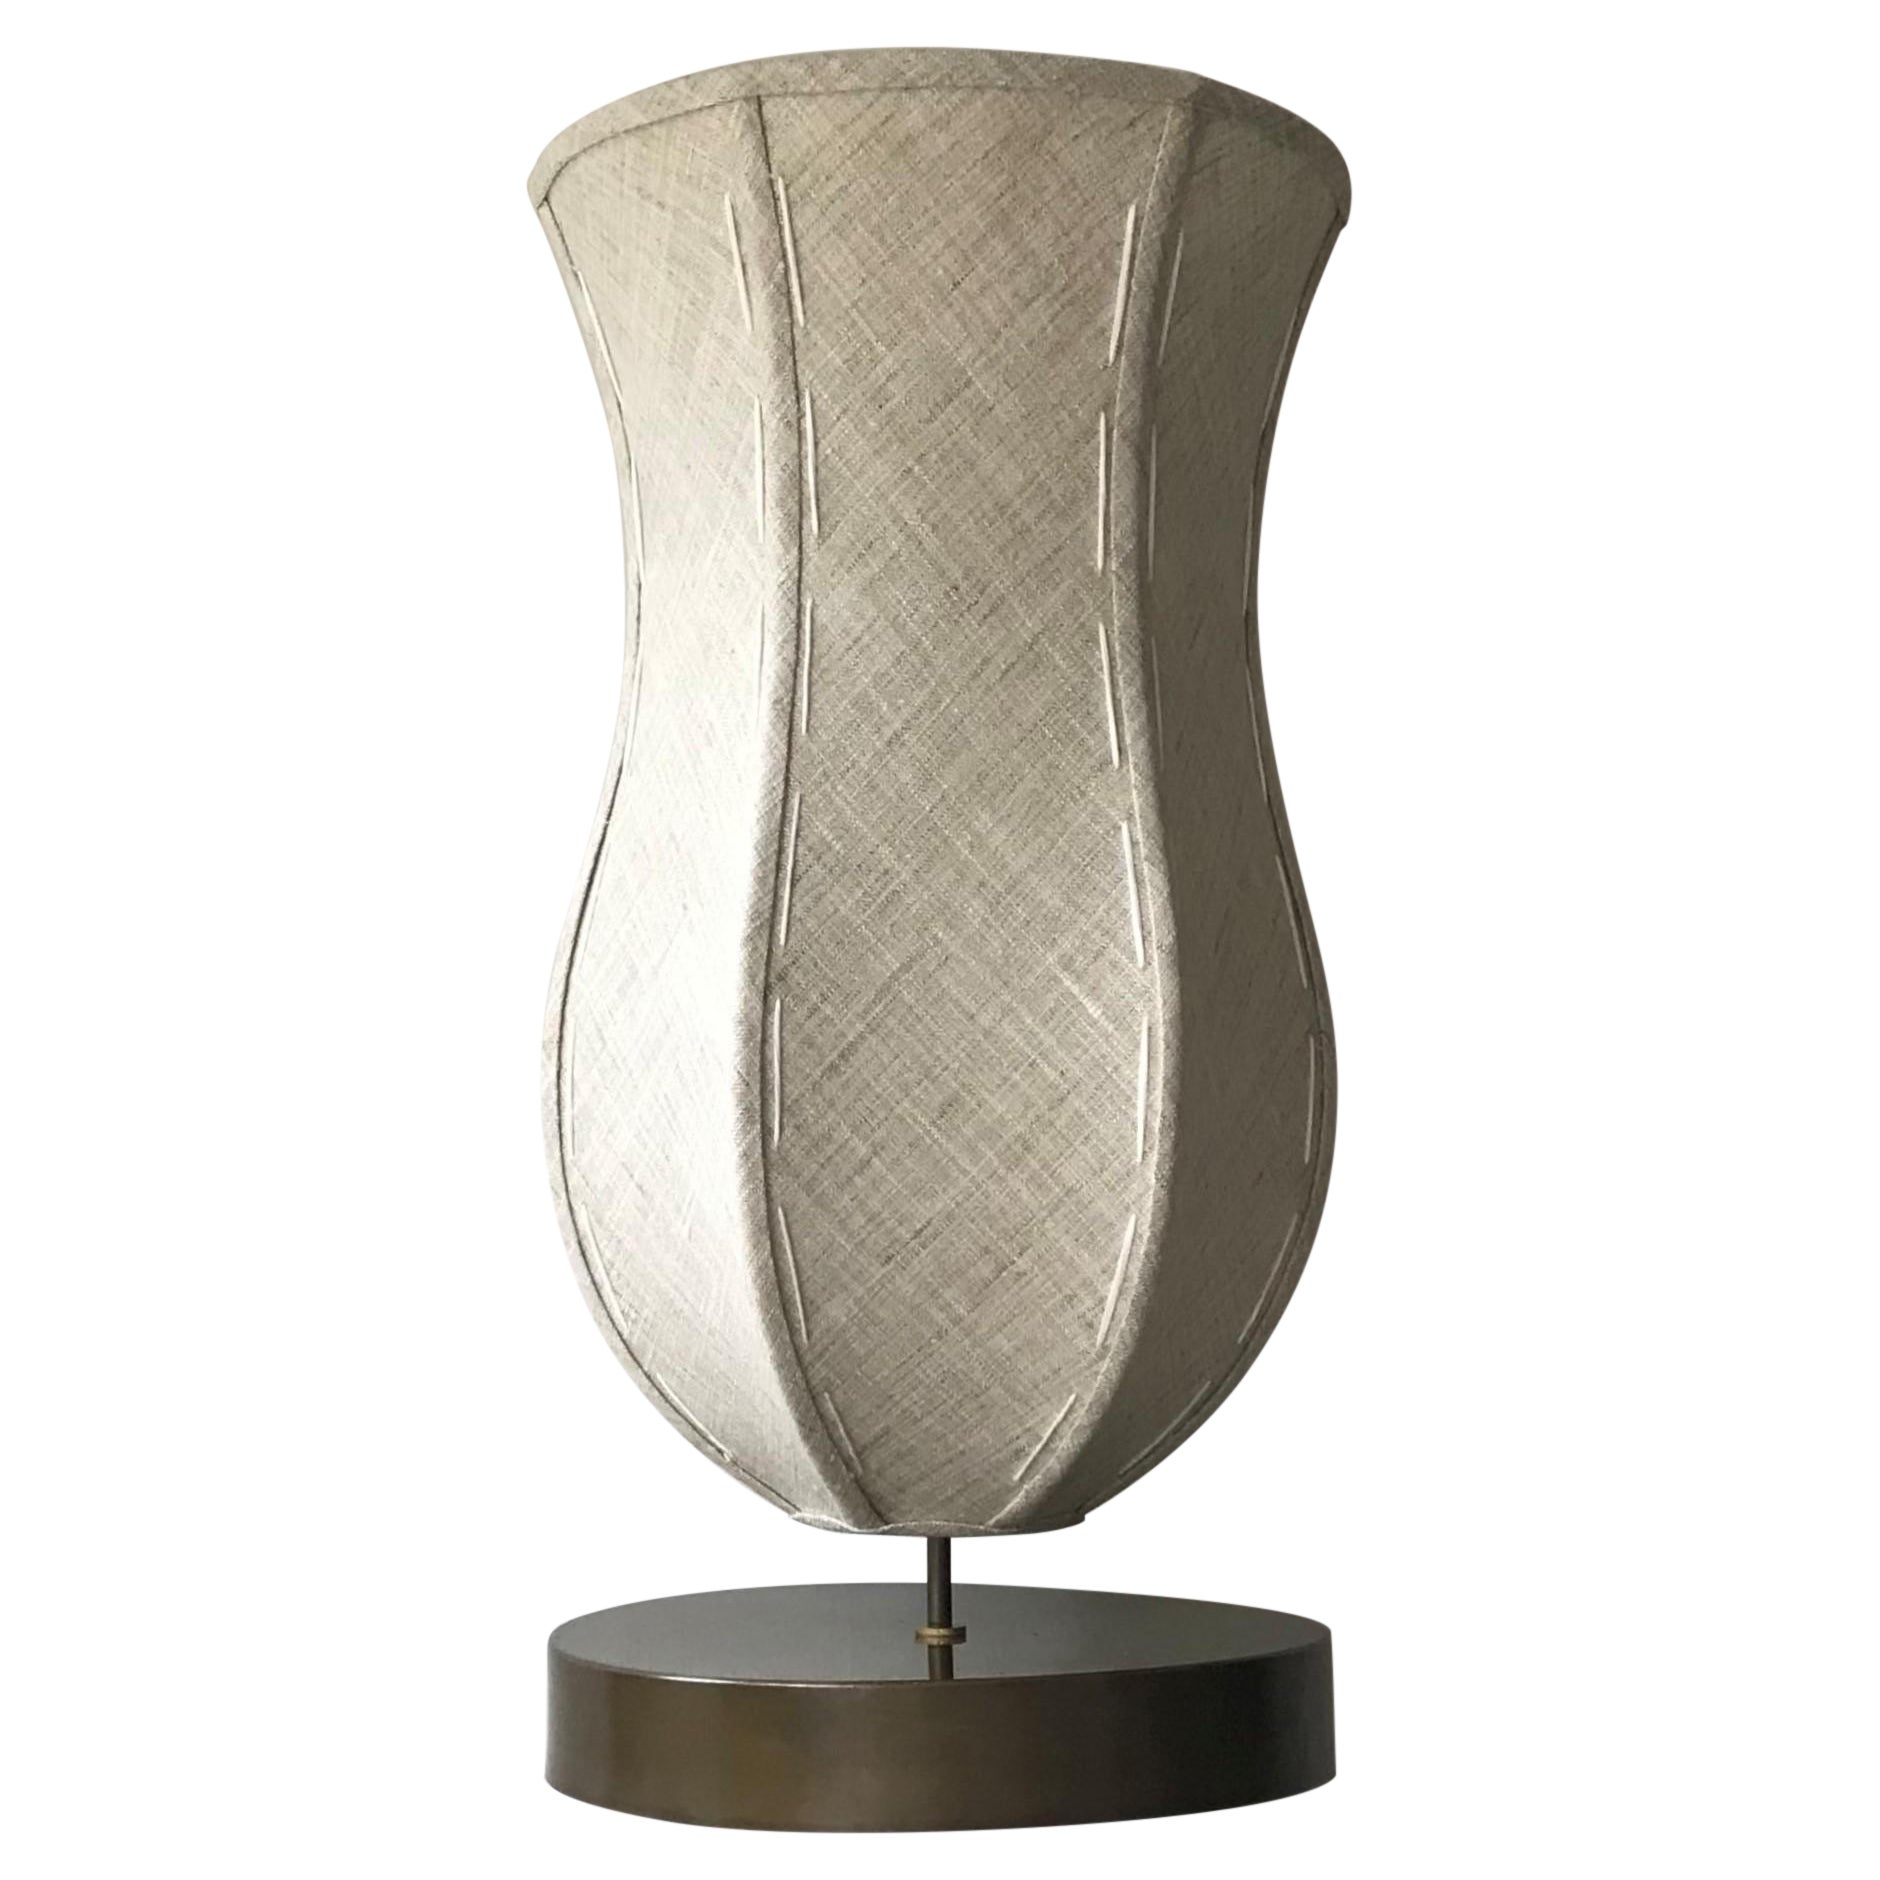 Lampe tulipe de Wende Reid organique, moderne, minimaliste, sculpturale, cubiste, patinée